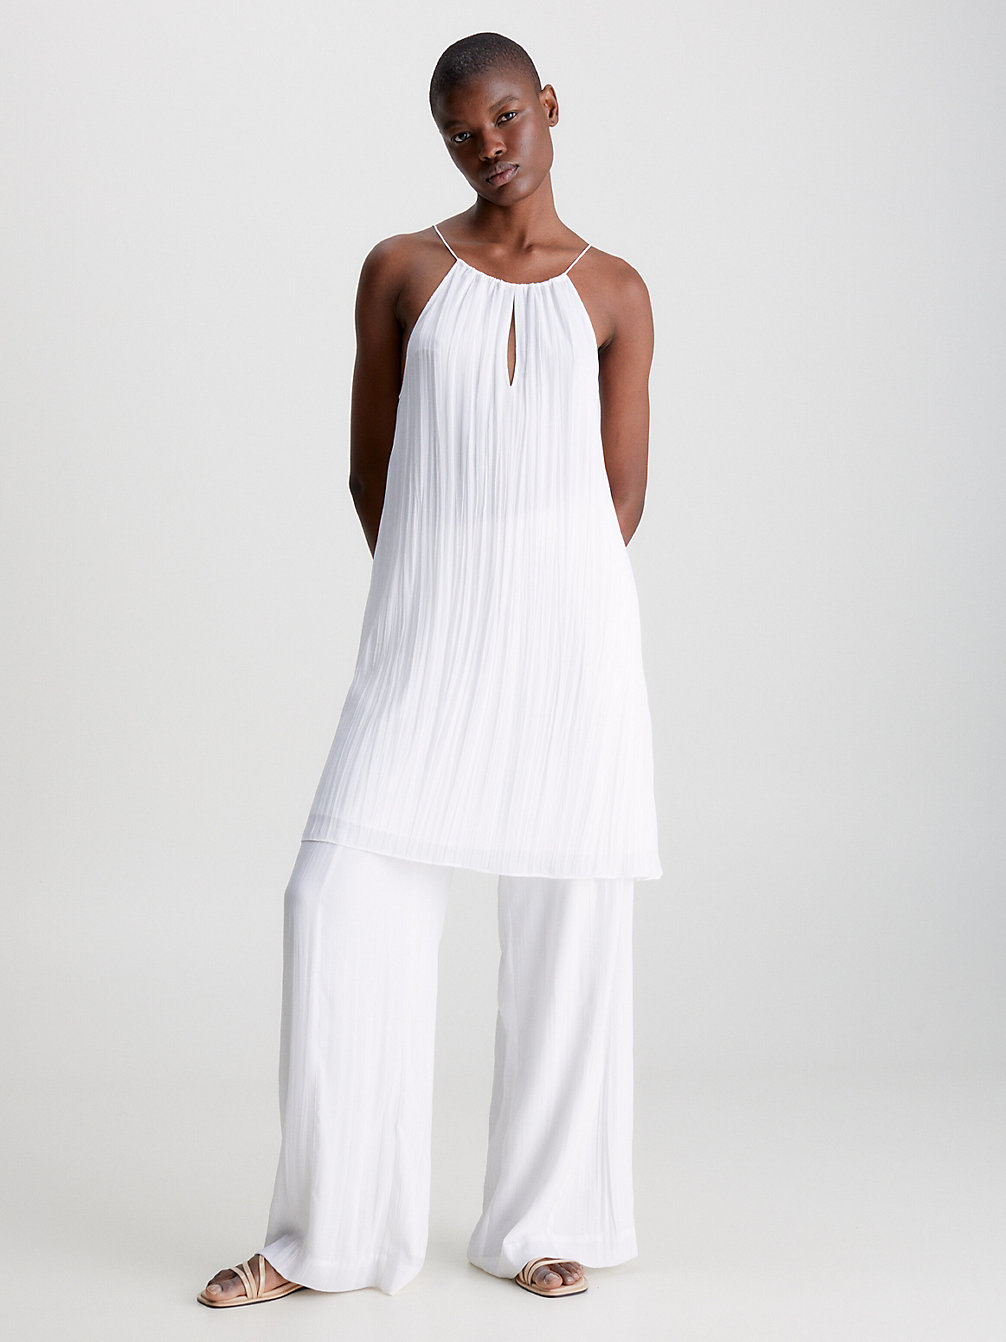 BRIGHT WHITE > Wciągana Sukienka Mini Z Marszczonej Krepy > undefined Kobiety - Calvin Klein